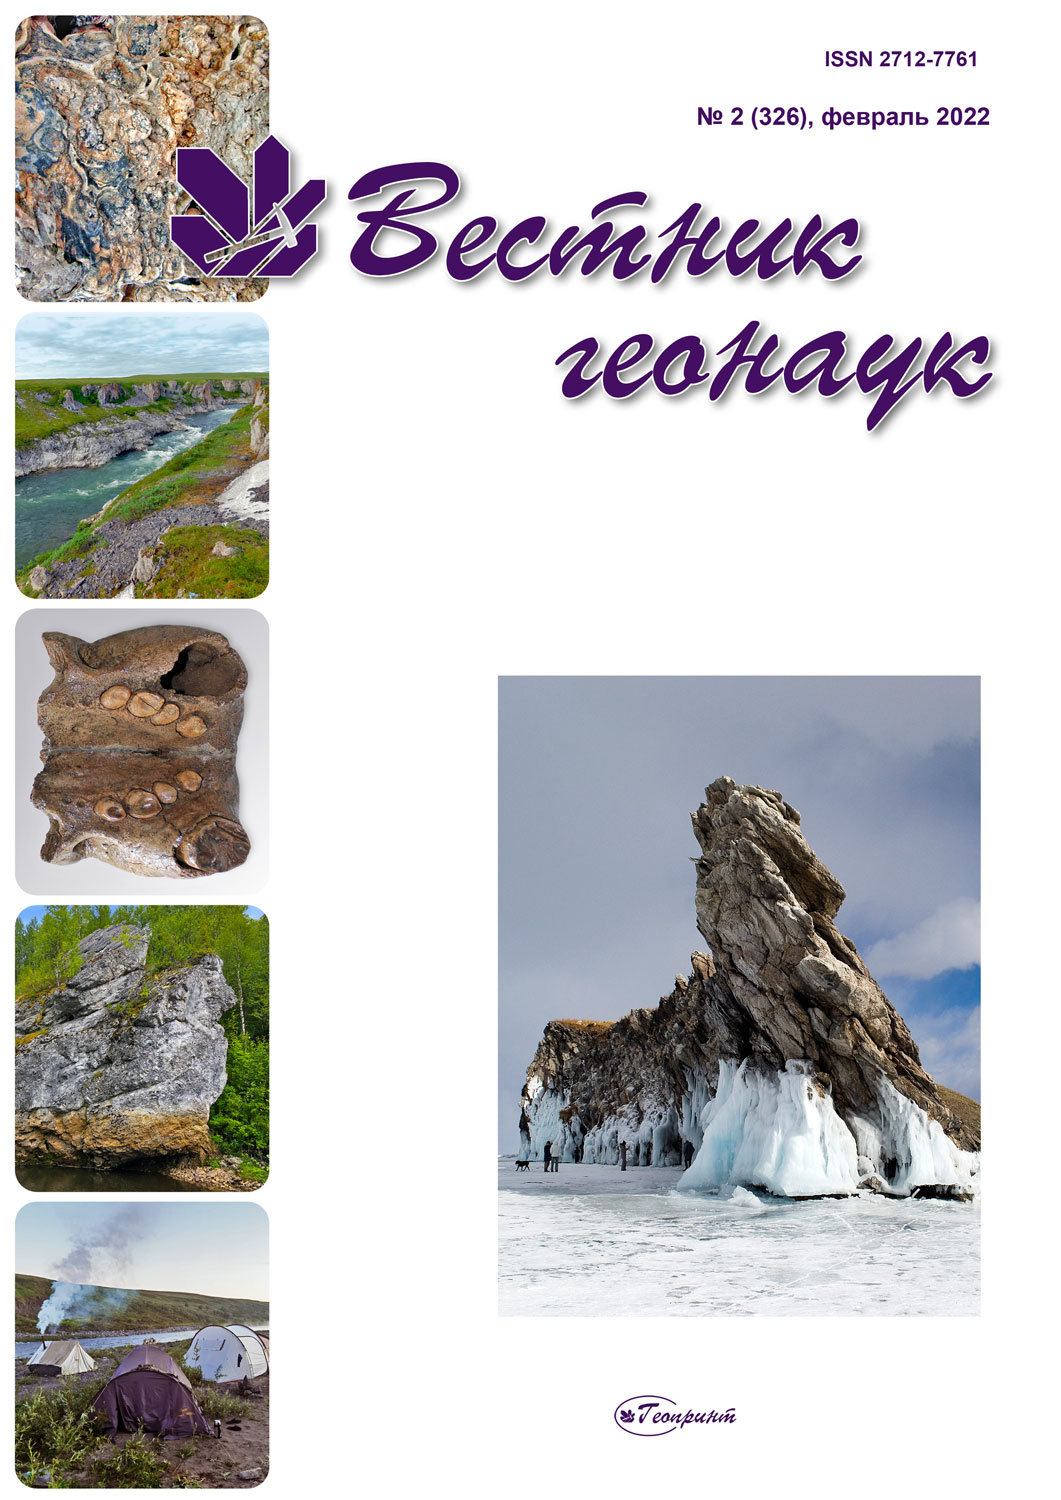             Минералого-геохимические свойства углей Мугунского месторождения (Иркутский угольный бассейн)
    